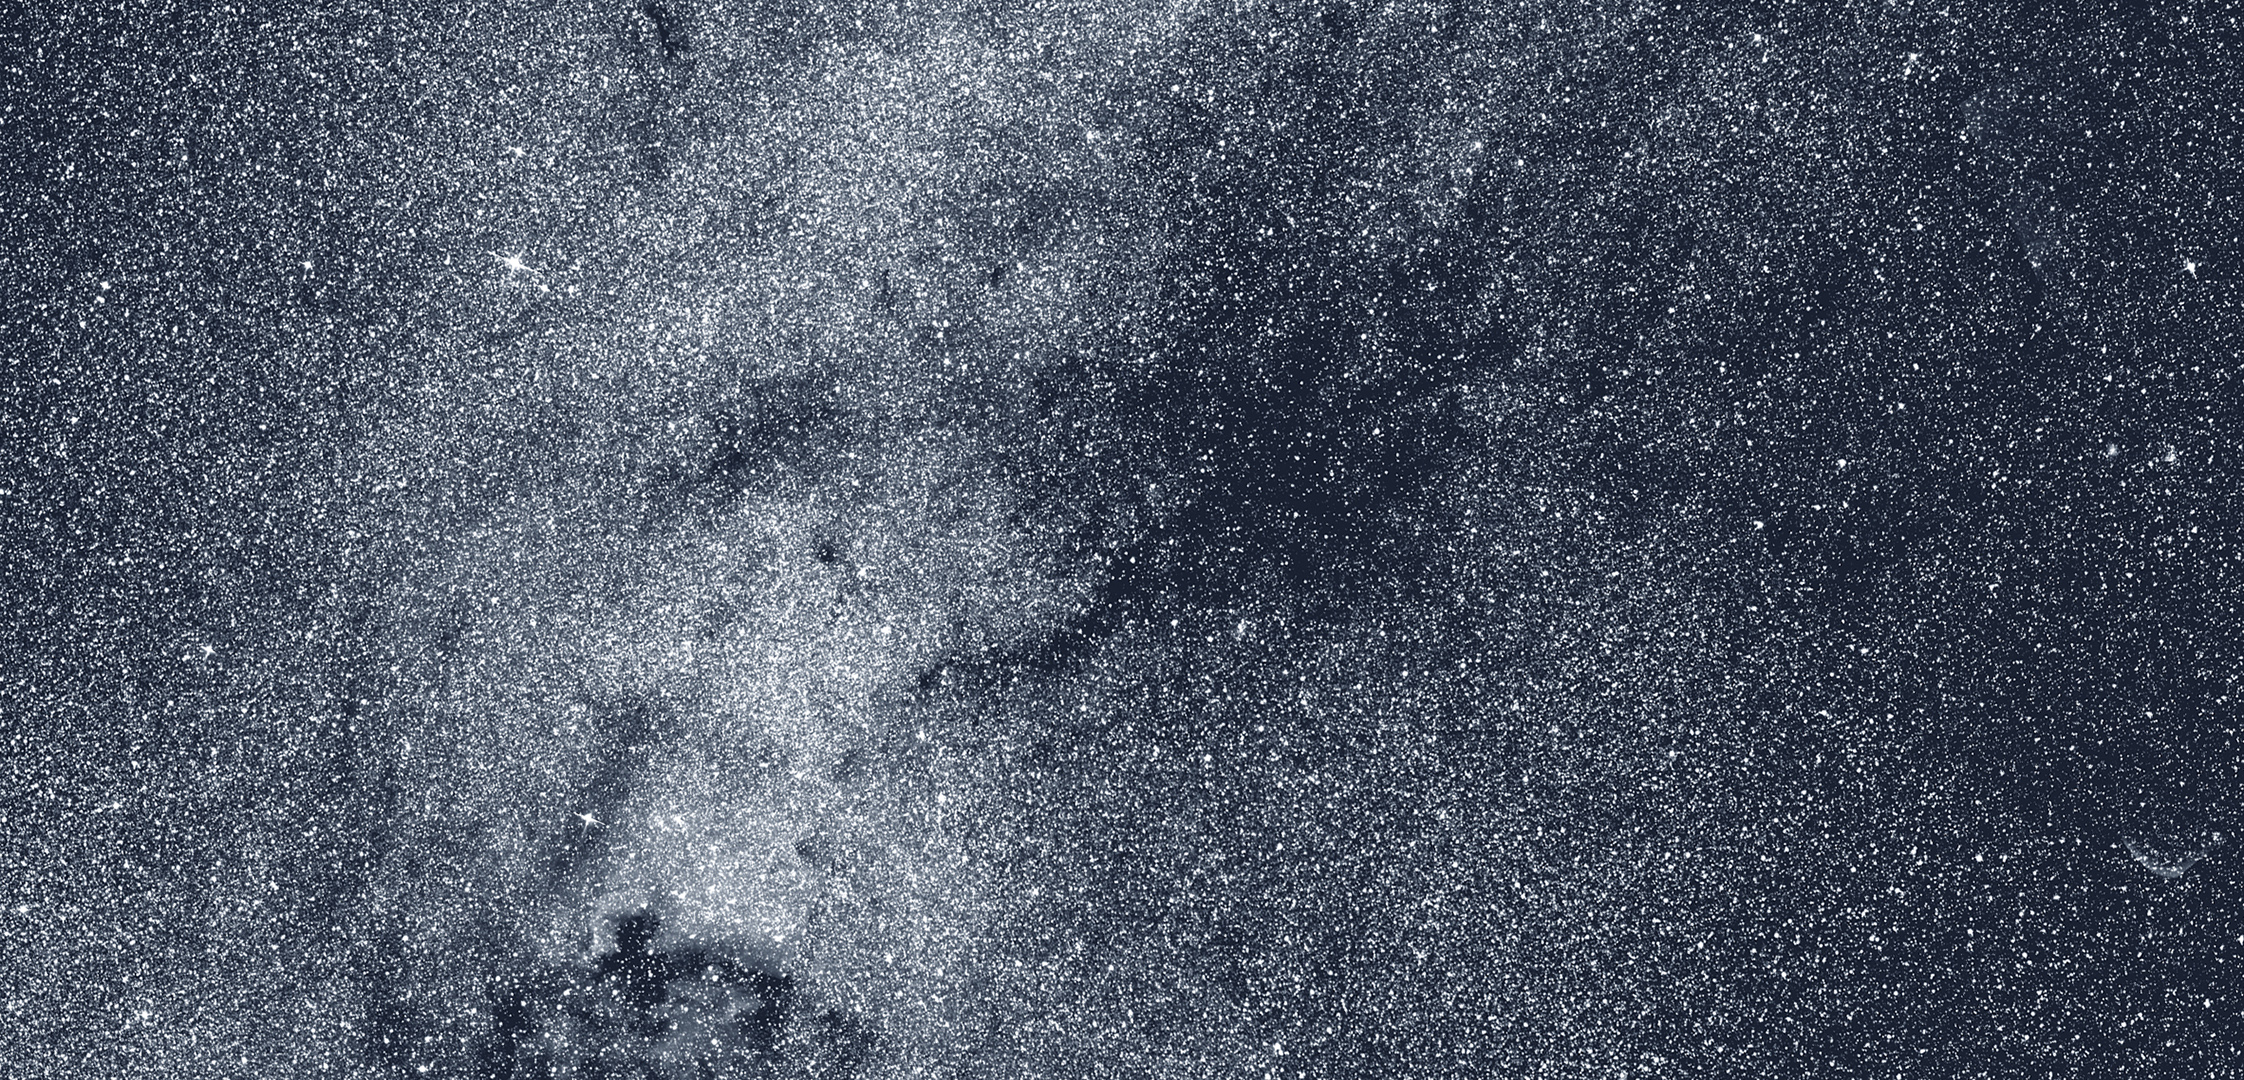 Ce détail du panorama nord du Tess&nbsp;présente une région de la constellation du Cygne. Au centre, la nébuleuse sombre tentaculaire Le Gentil 3, vaste nuage de poussière interstellaire, obscurcit la lumière d'étoiles plus éloignées. Une vrille proéminente s'étendant vers le bas, à gauche, pointe vers la brillante nébuleuse de l'Amérique du Nord, gaz incandescent ainsi nommé pour sa ressemblance avec le continent. © Nasa,&nbsp;MIT, Tess&nbsp;et Ethan Kruse (USRA).